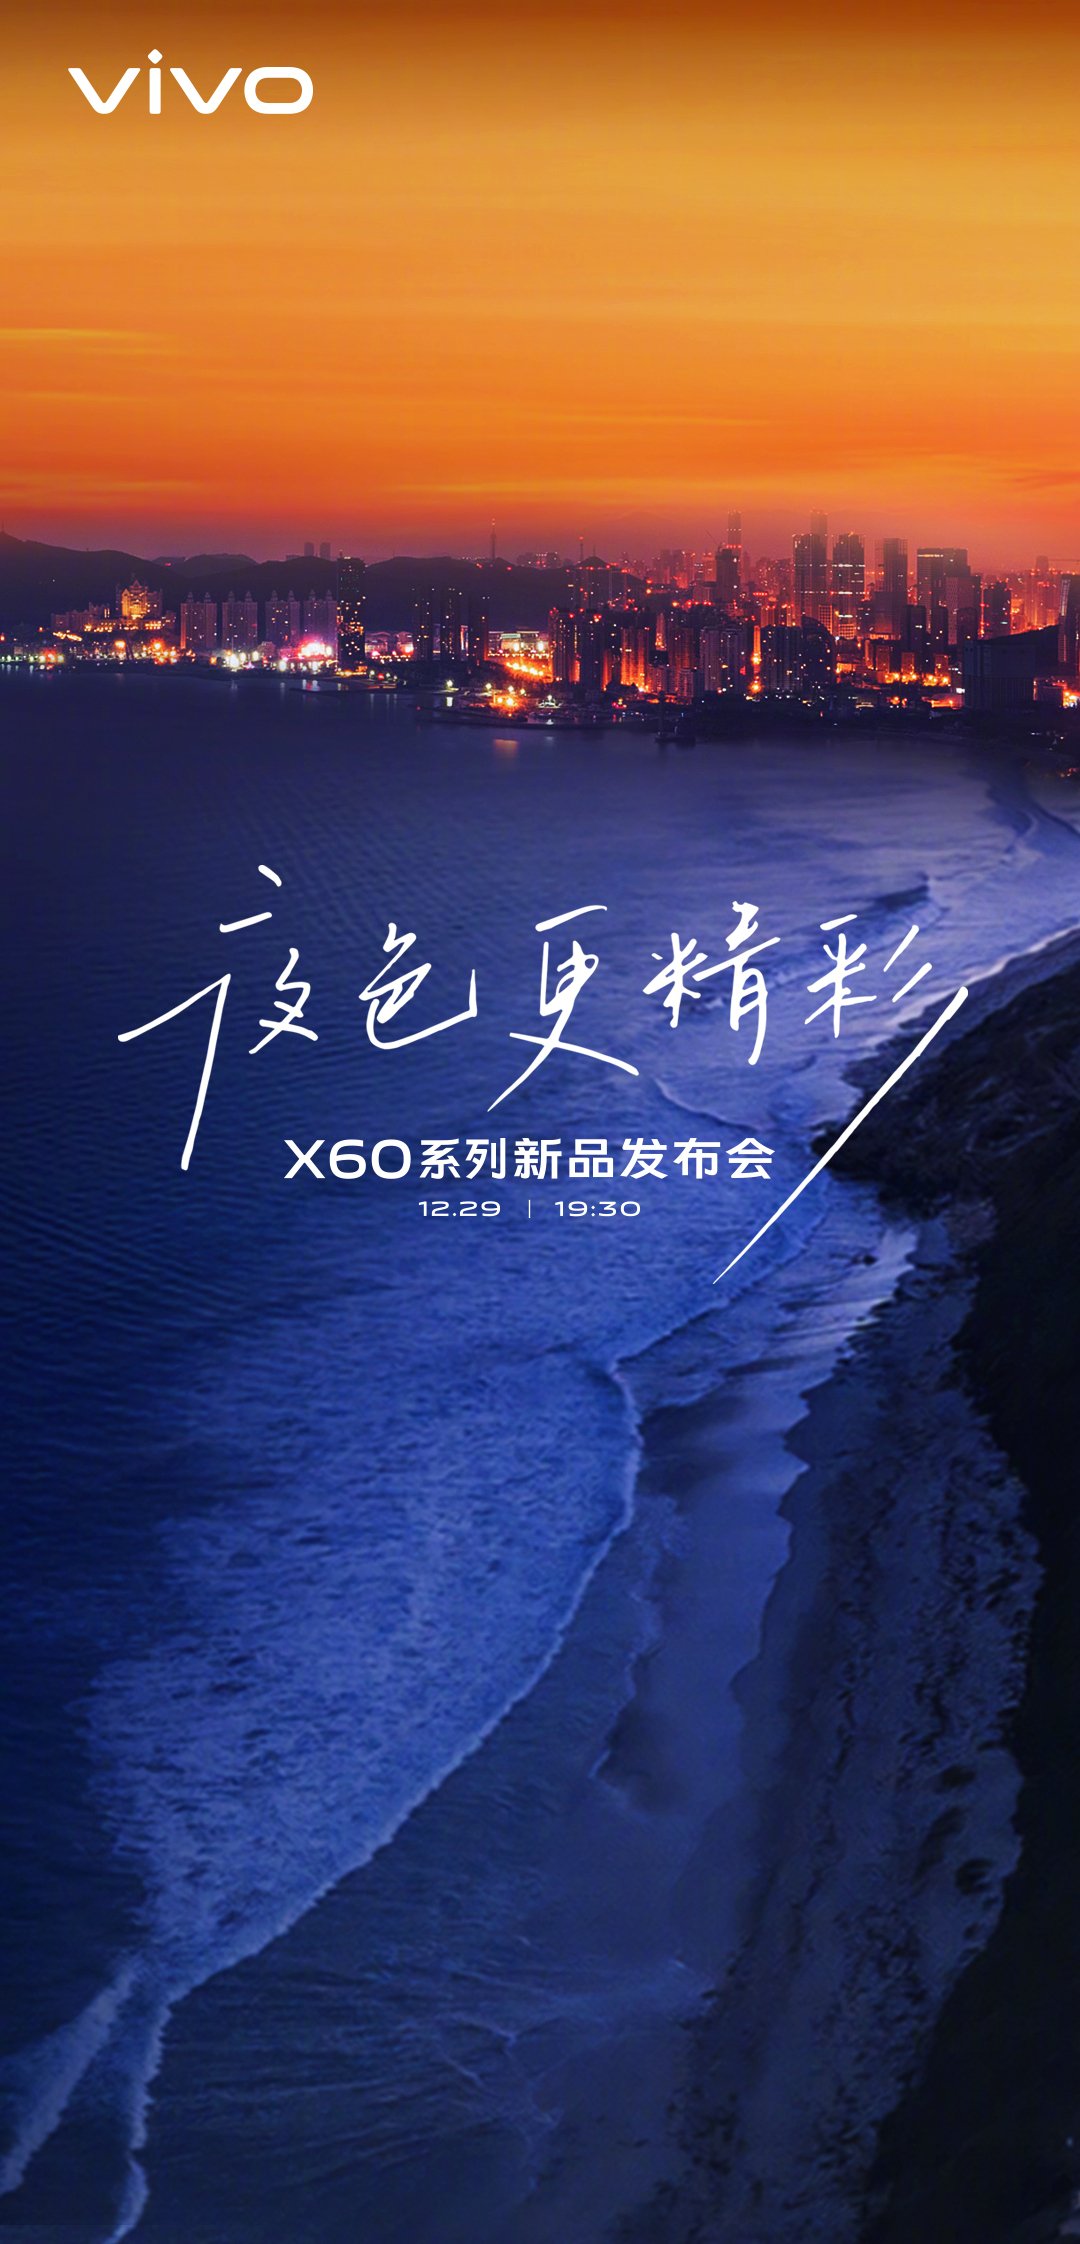 Серия Vivo X60 запускается 29 декабря, выпущено официальное промо